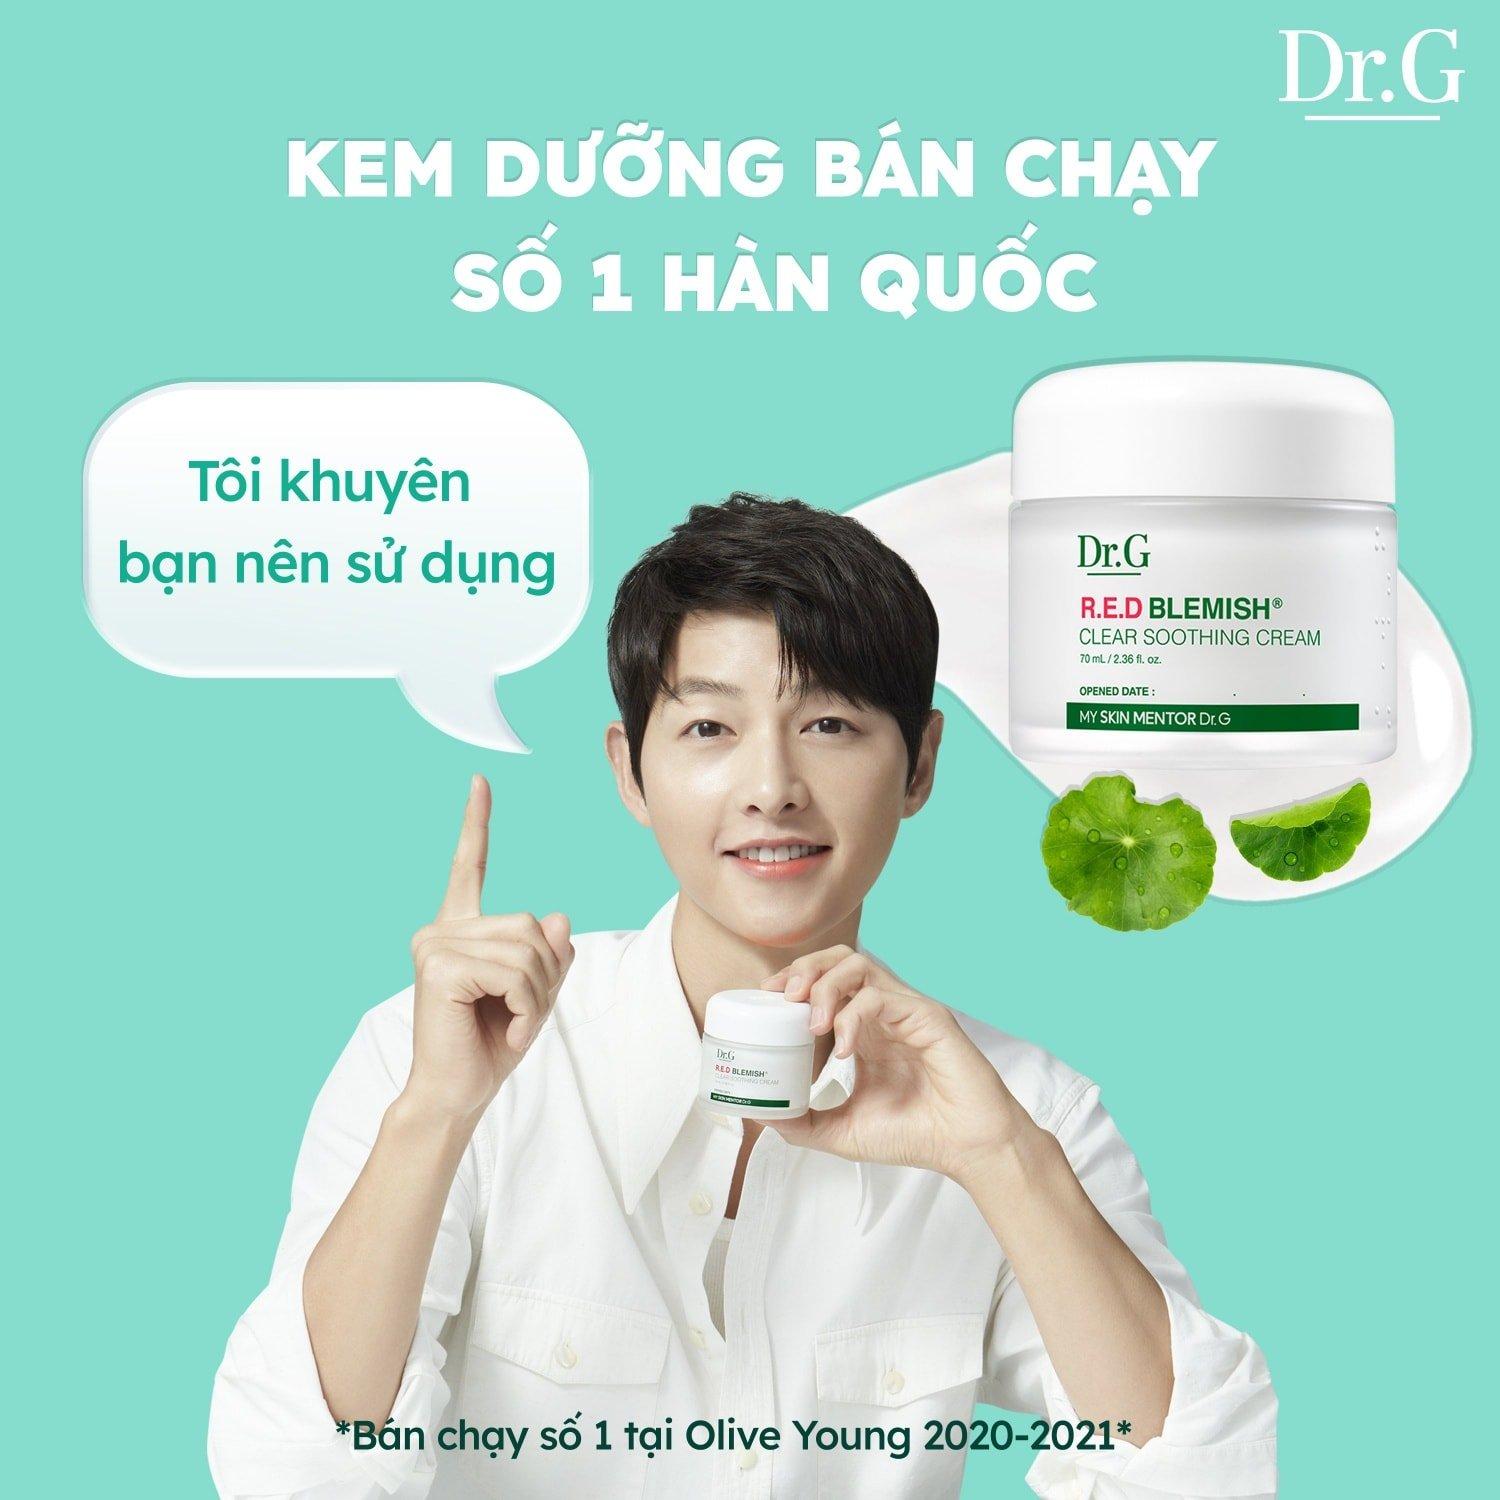 Oppa Song Joong Ki đã chọn lựa kem dưỡng Dr.G R.E.D Blemish Clear Soothing Cream là chân ái cho các cô nàng (nguồn: internet)